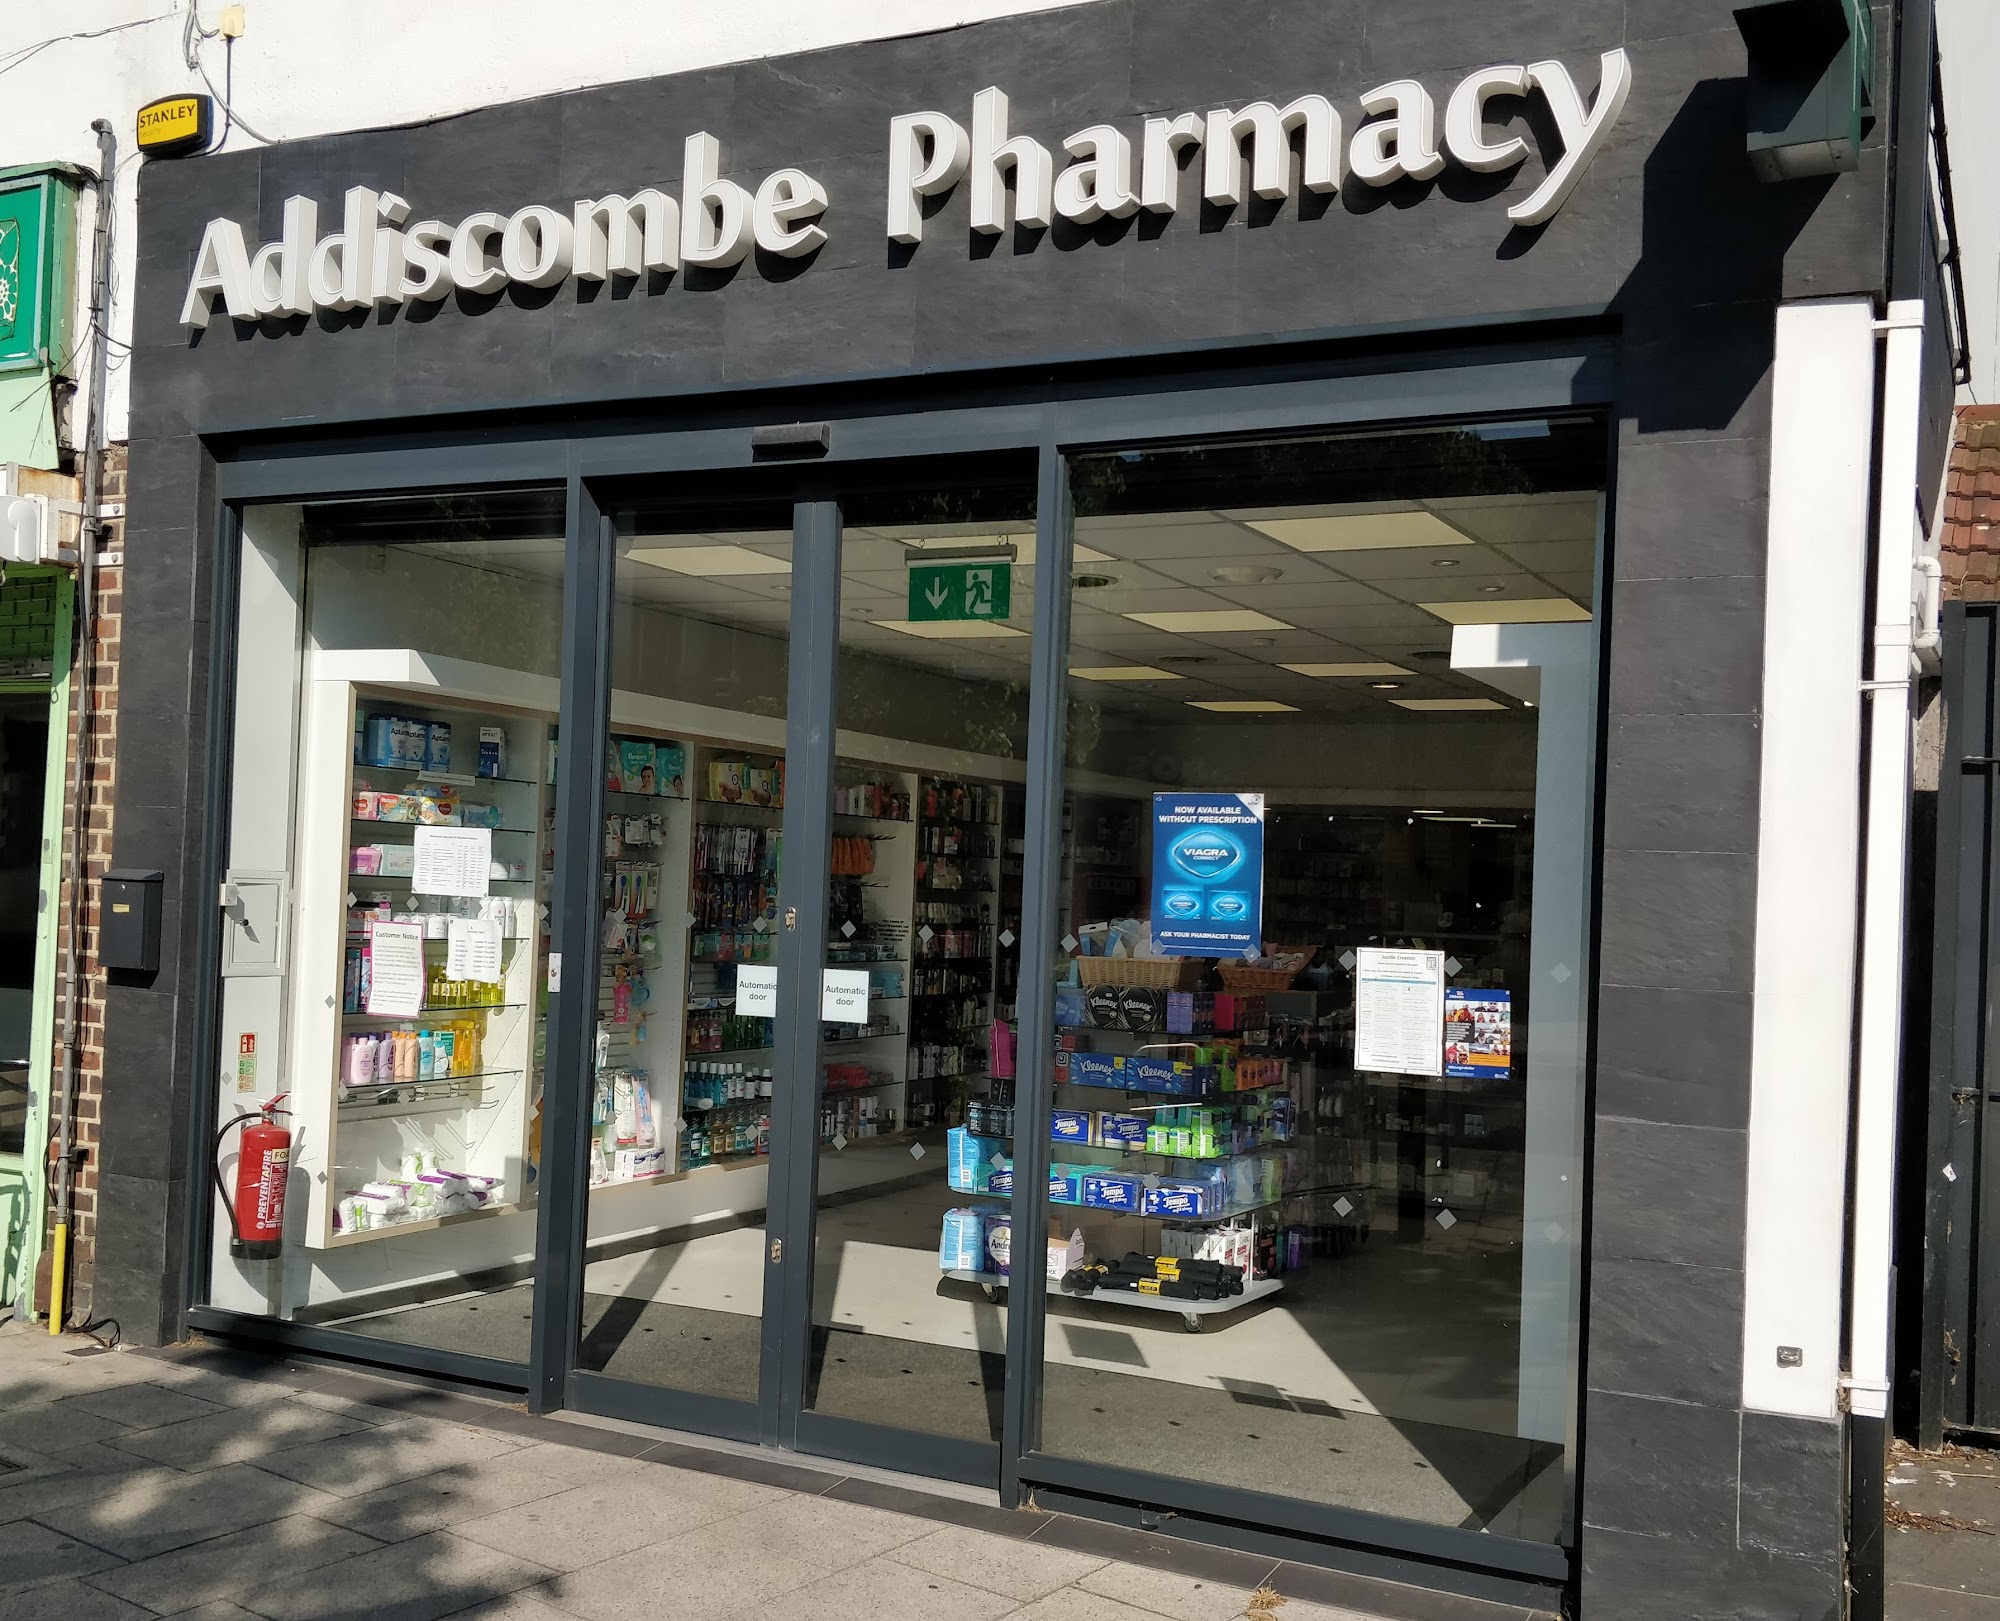 Addiscombe Pharmacy